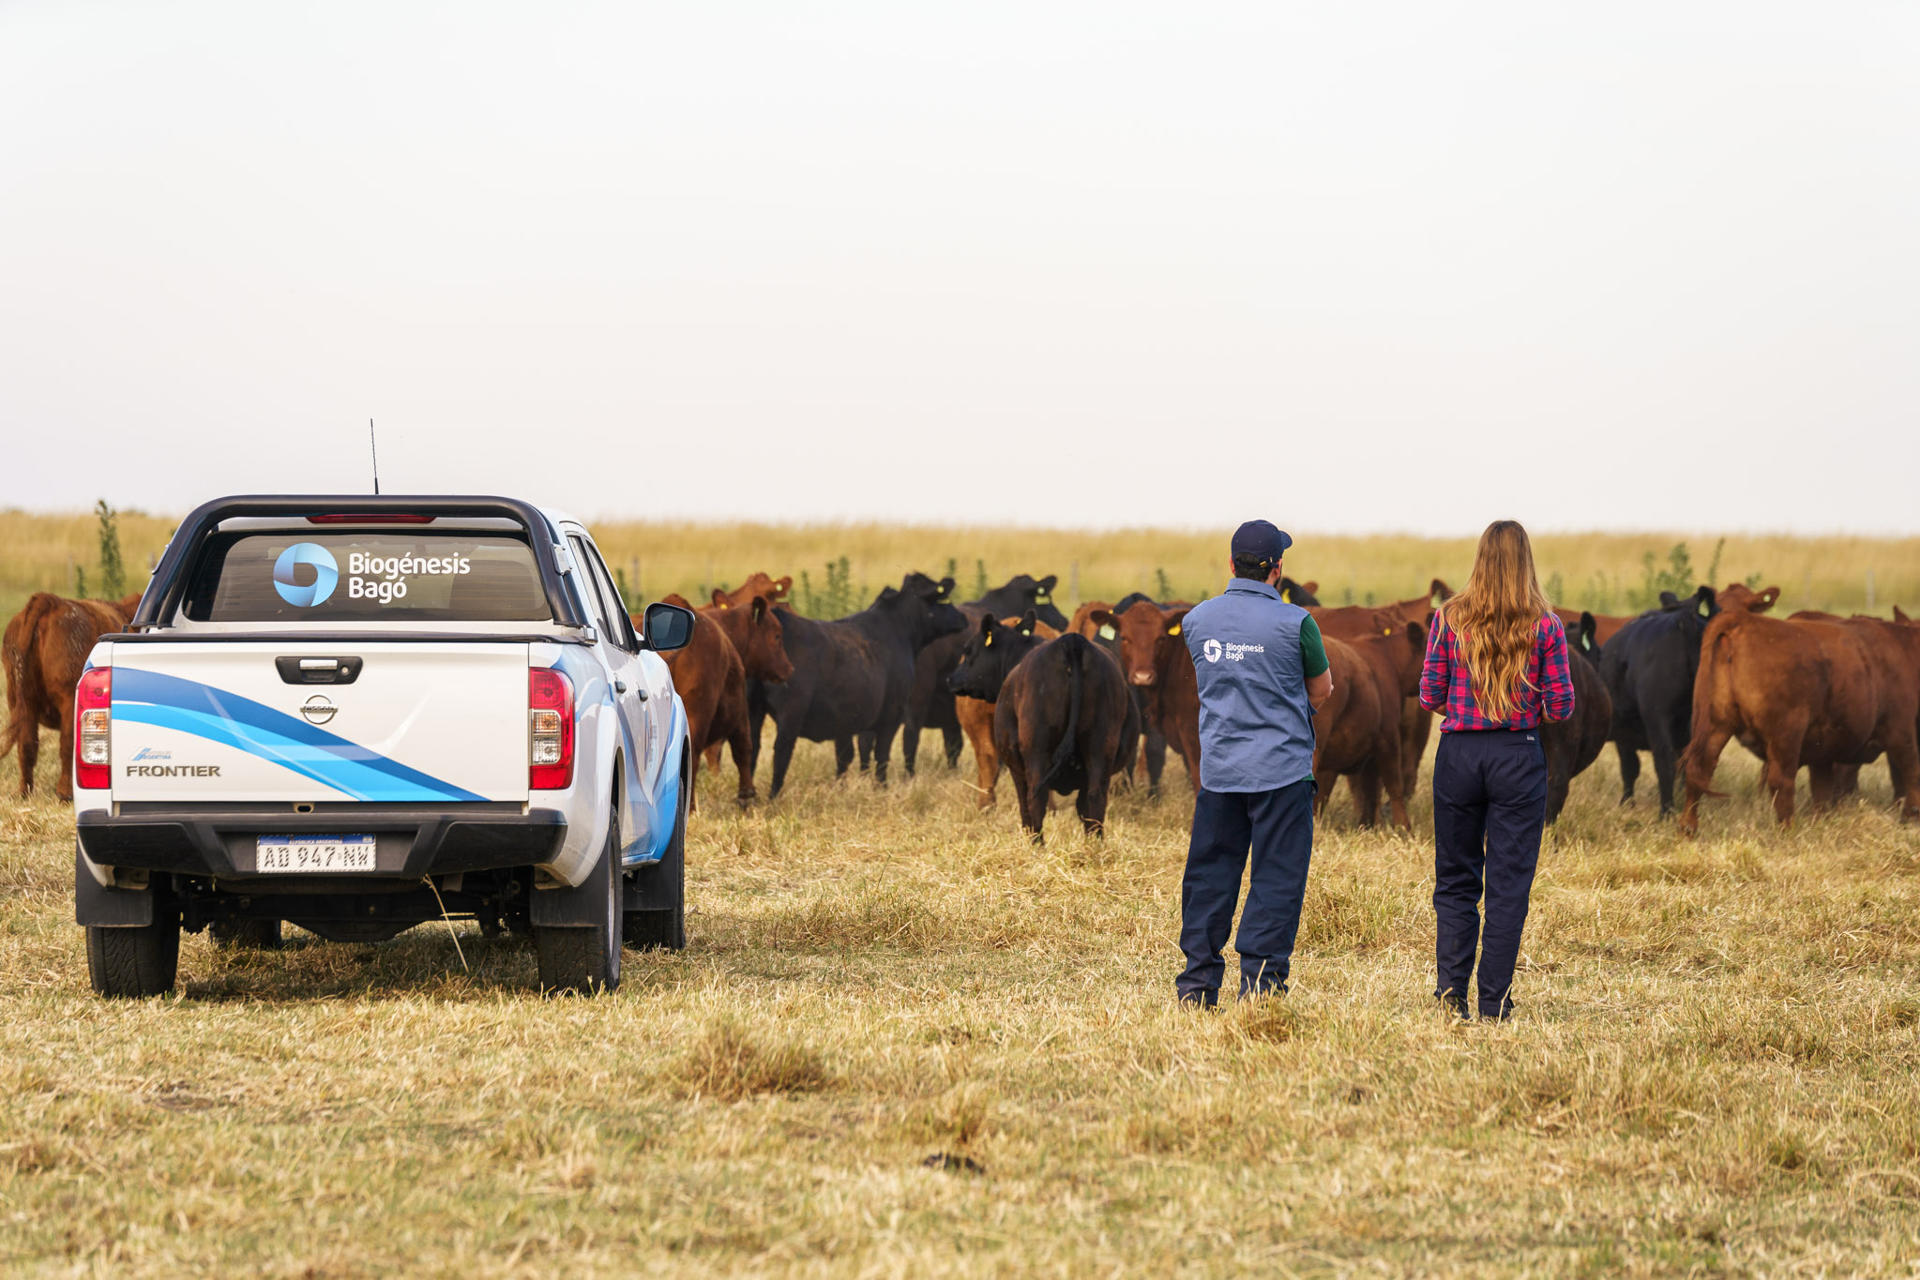 Fotografía cedida por Biogénesis Bagó donde se observa a unos trabajadores mientras observan al ganado, en Argentina. EFE/ Biogénesis Bagó/ Kino Vobio
